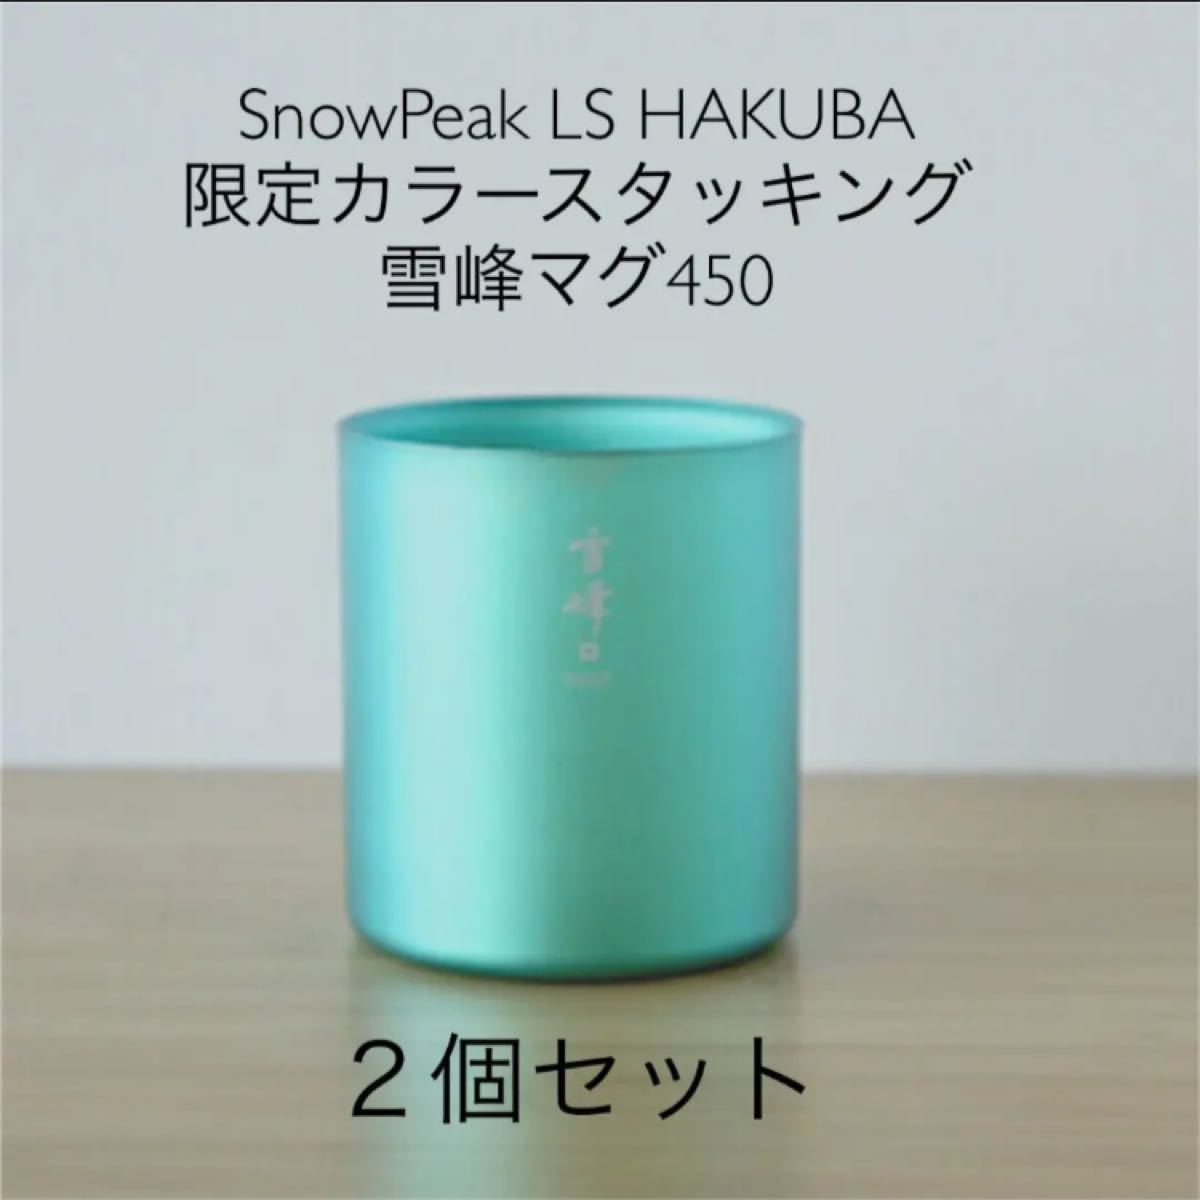 SnowPeak LS HAKUBA 限定カラースタッキング雪峰マグ450 ２個セット